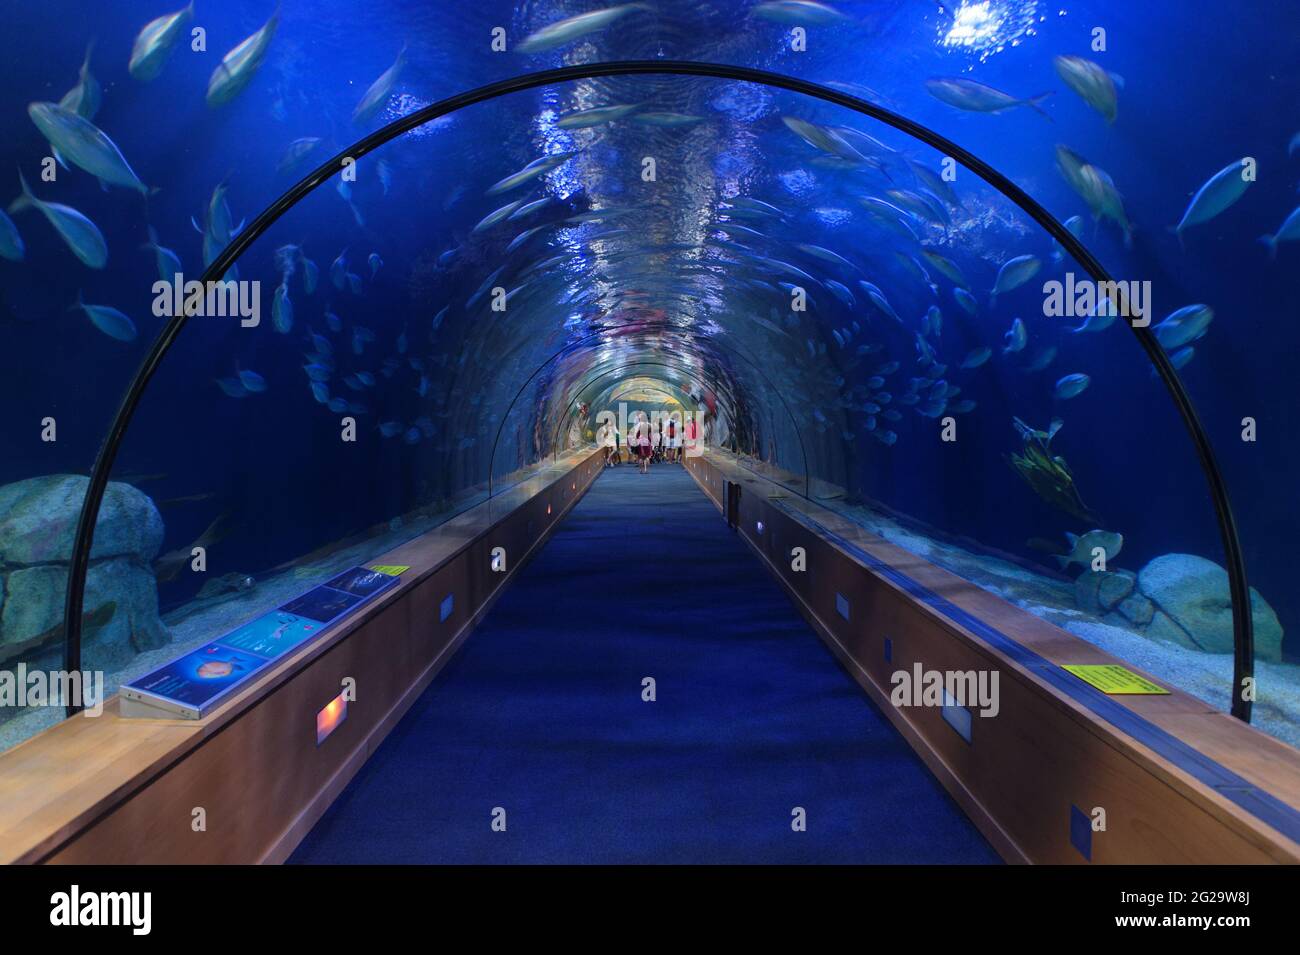 Oceanogràfic de València. The largest aquarium in Europe. Stock Photo